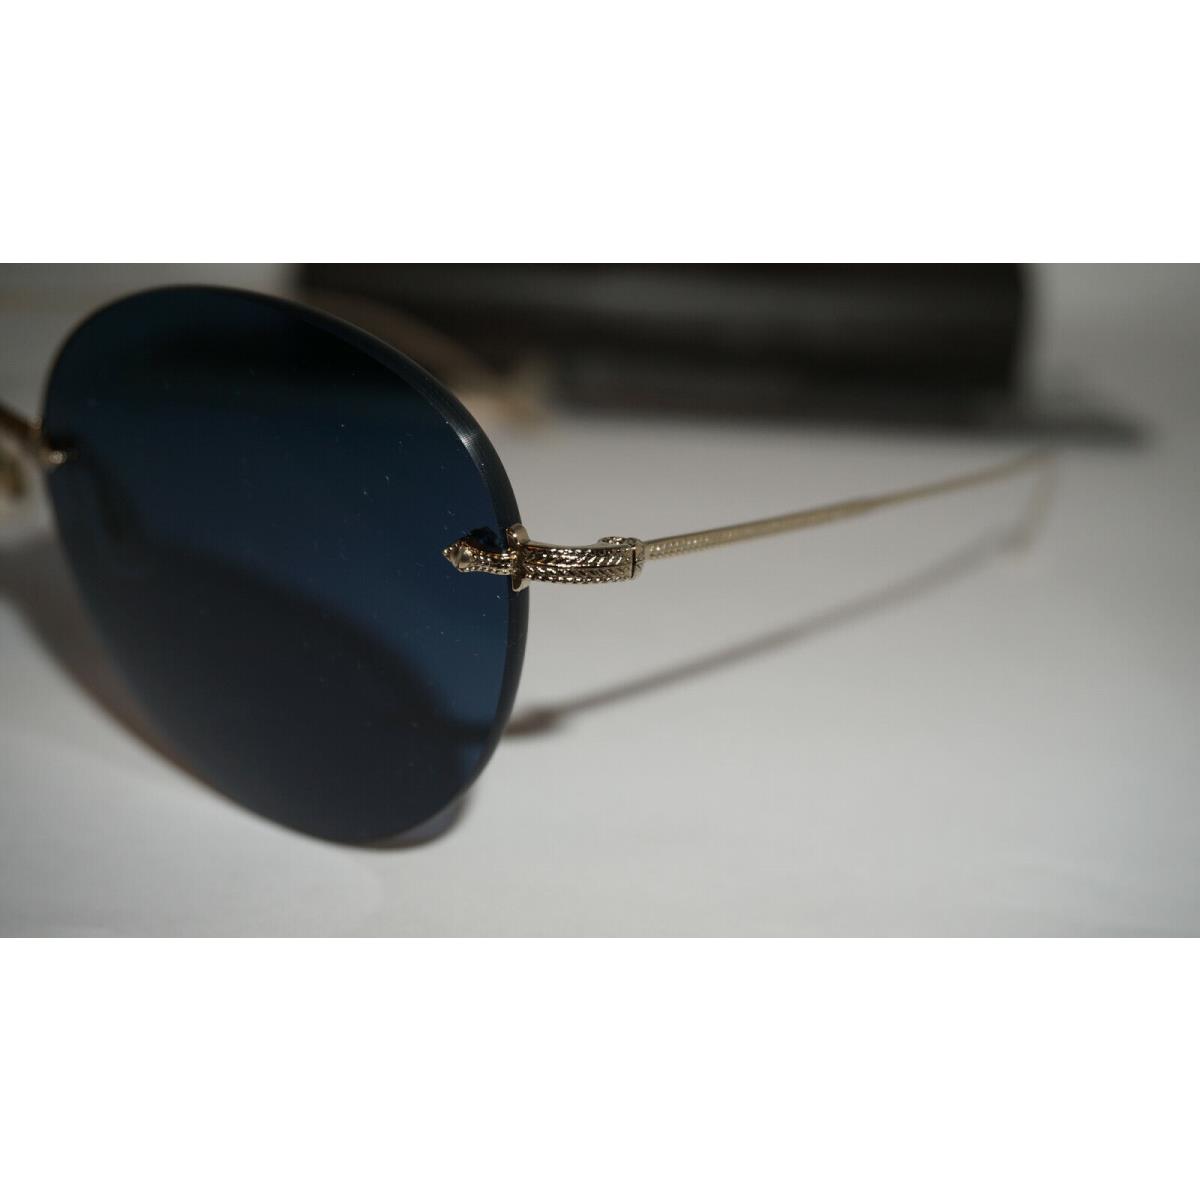 Oliver Peoples sunglasses  - Soft Gold Frame, Blue Lens 3